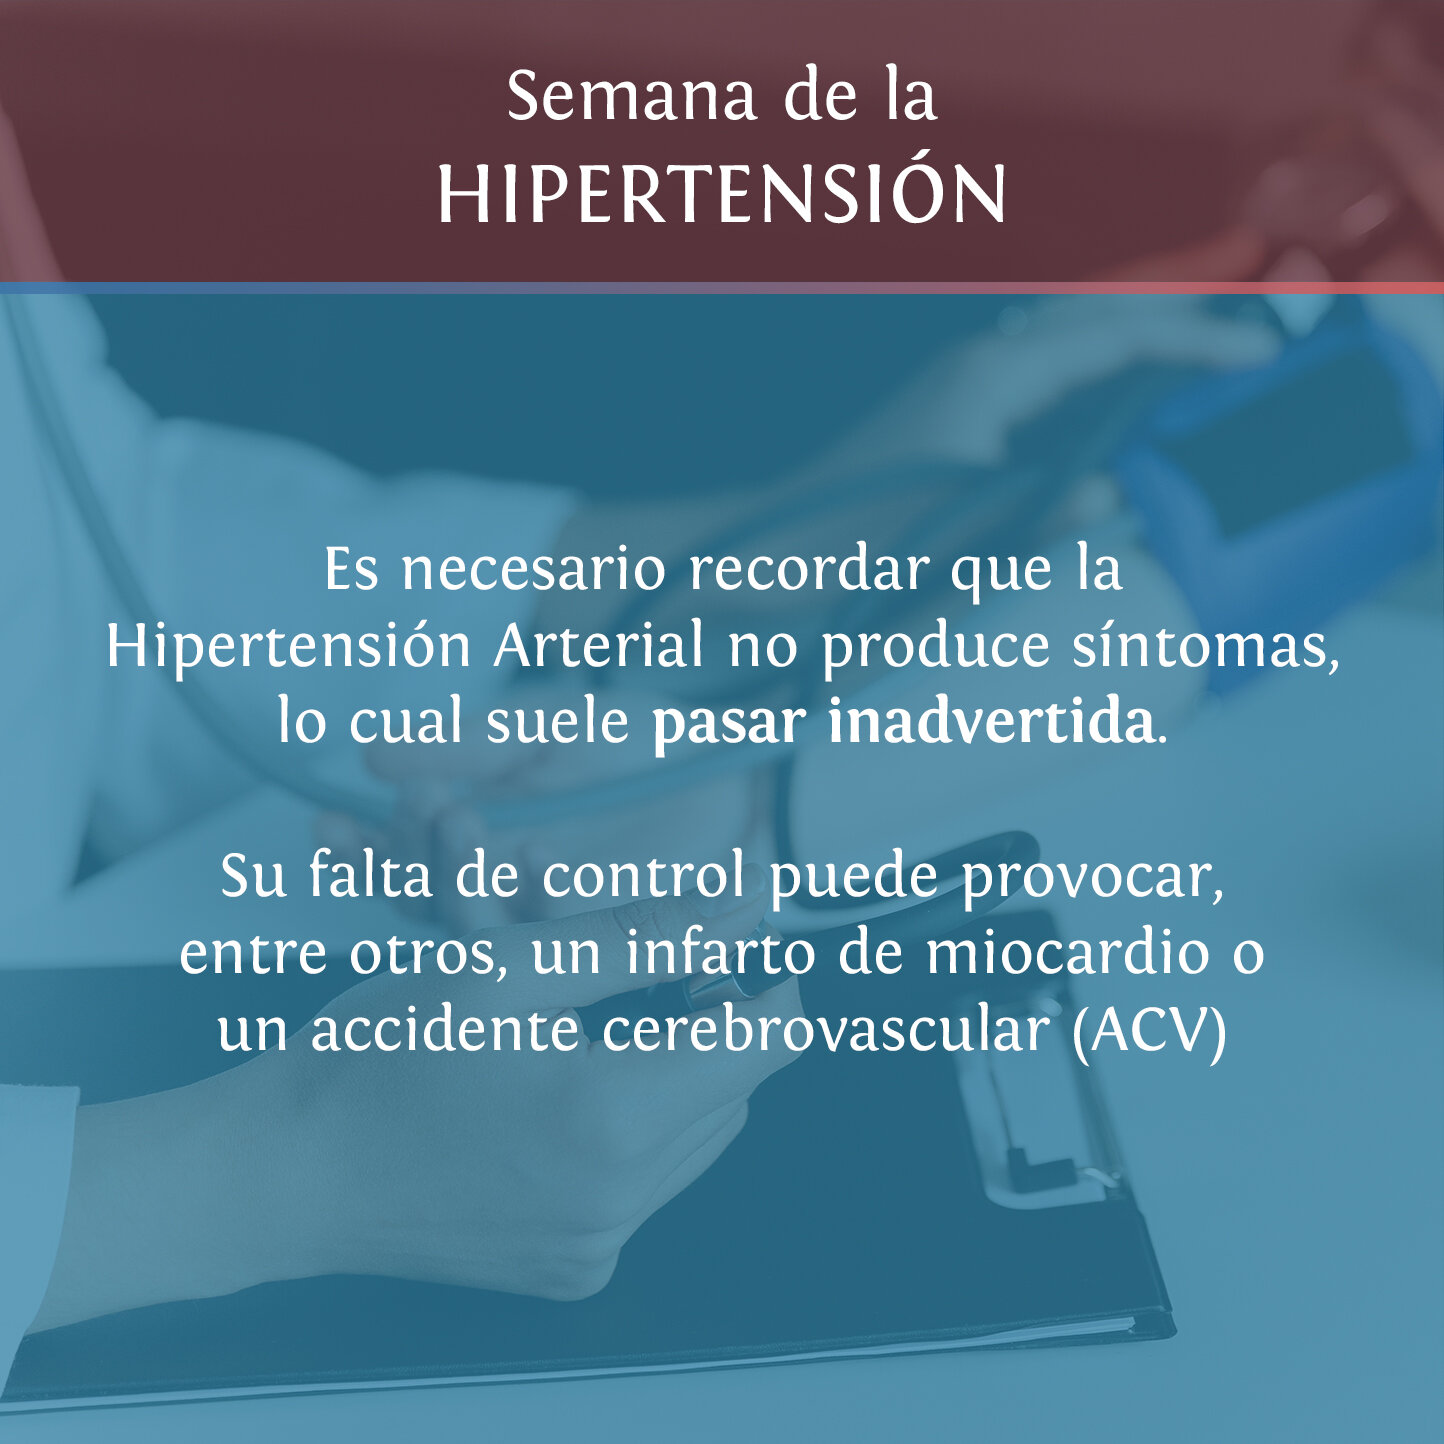 placa Hipertension2.jpg